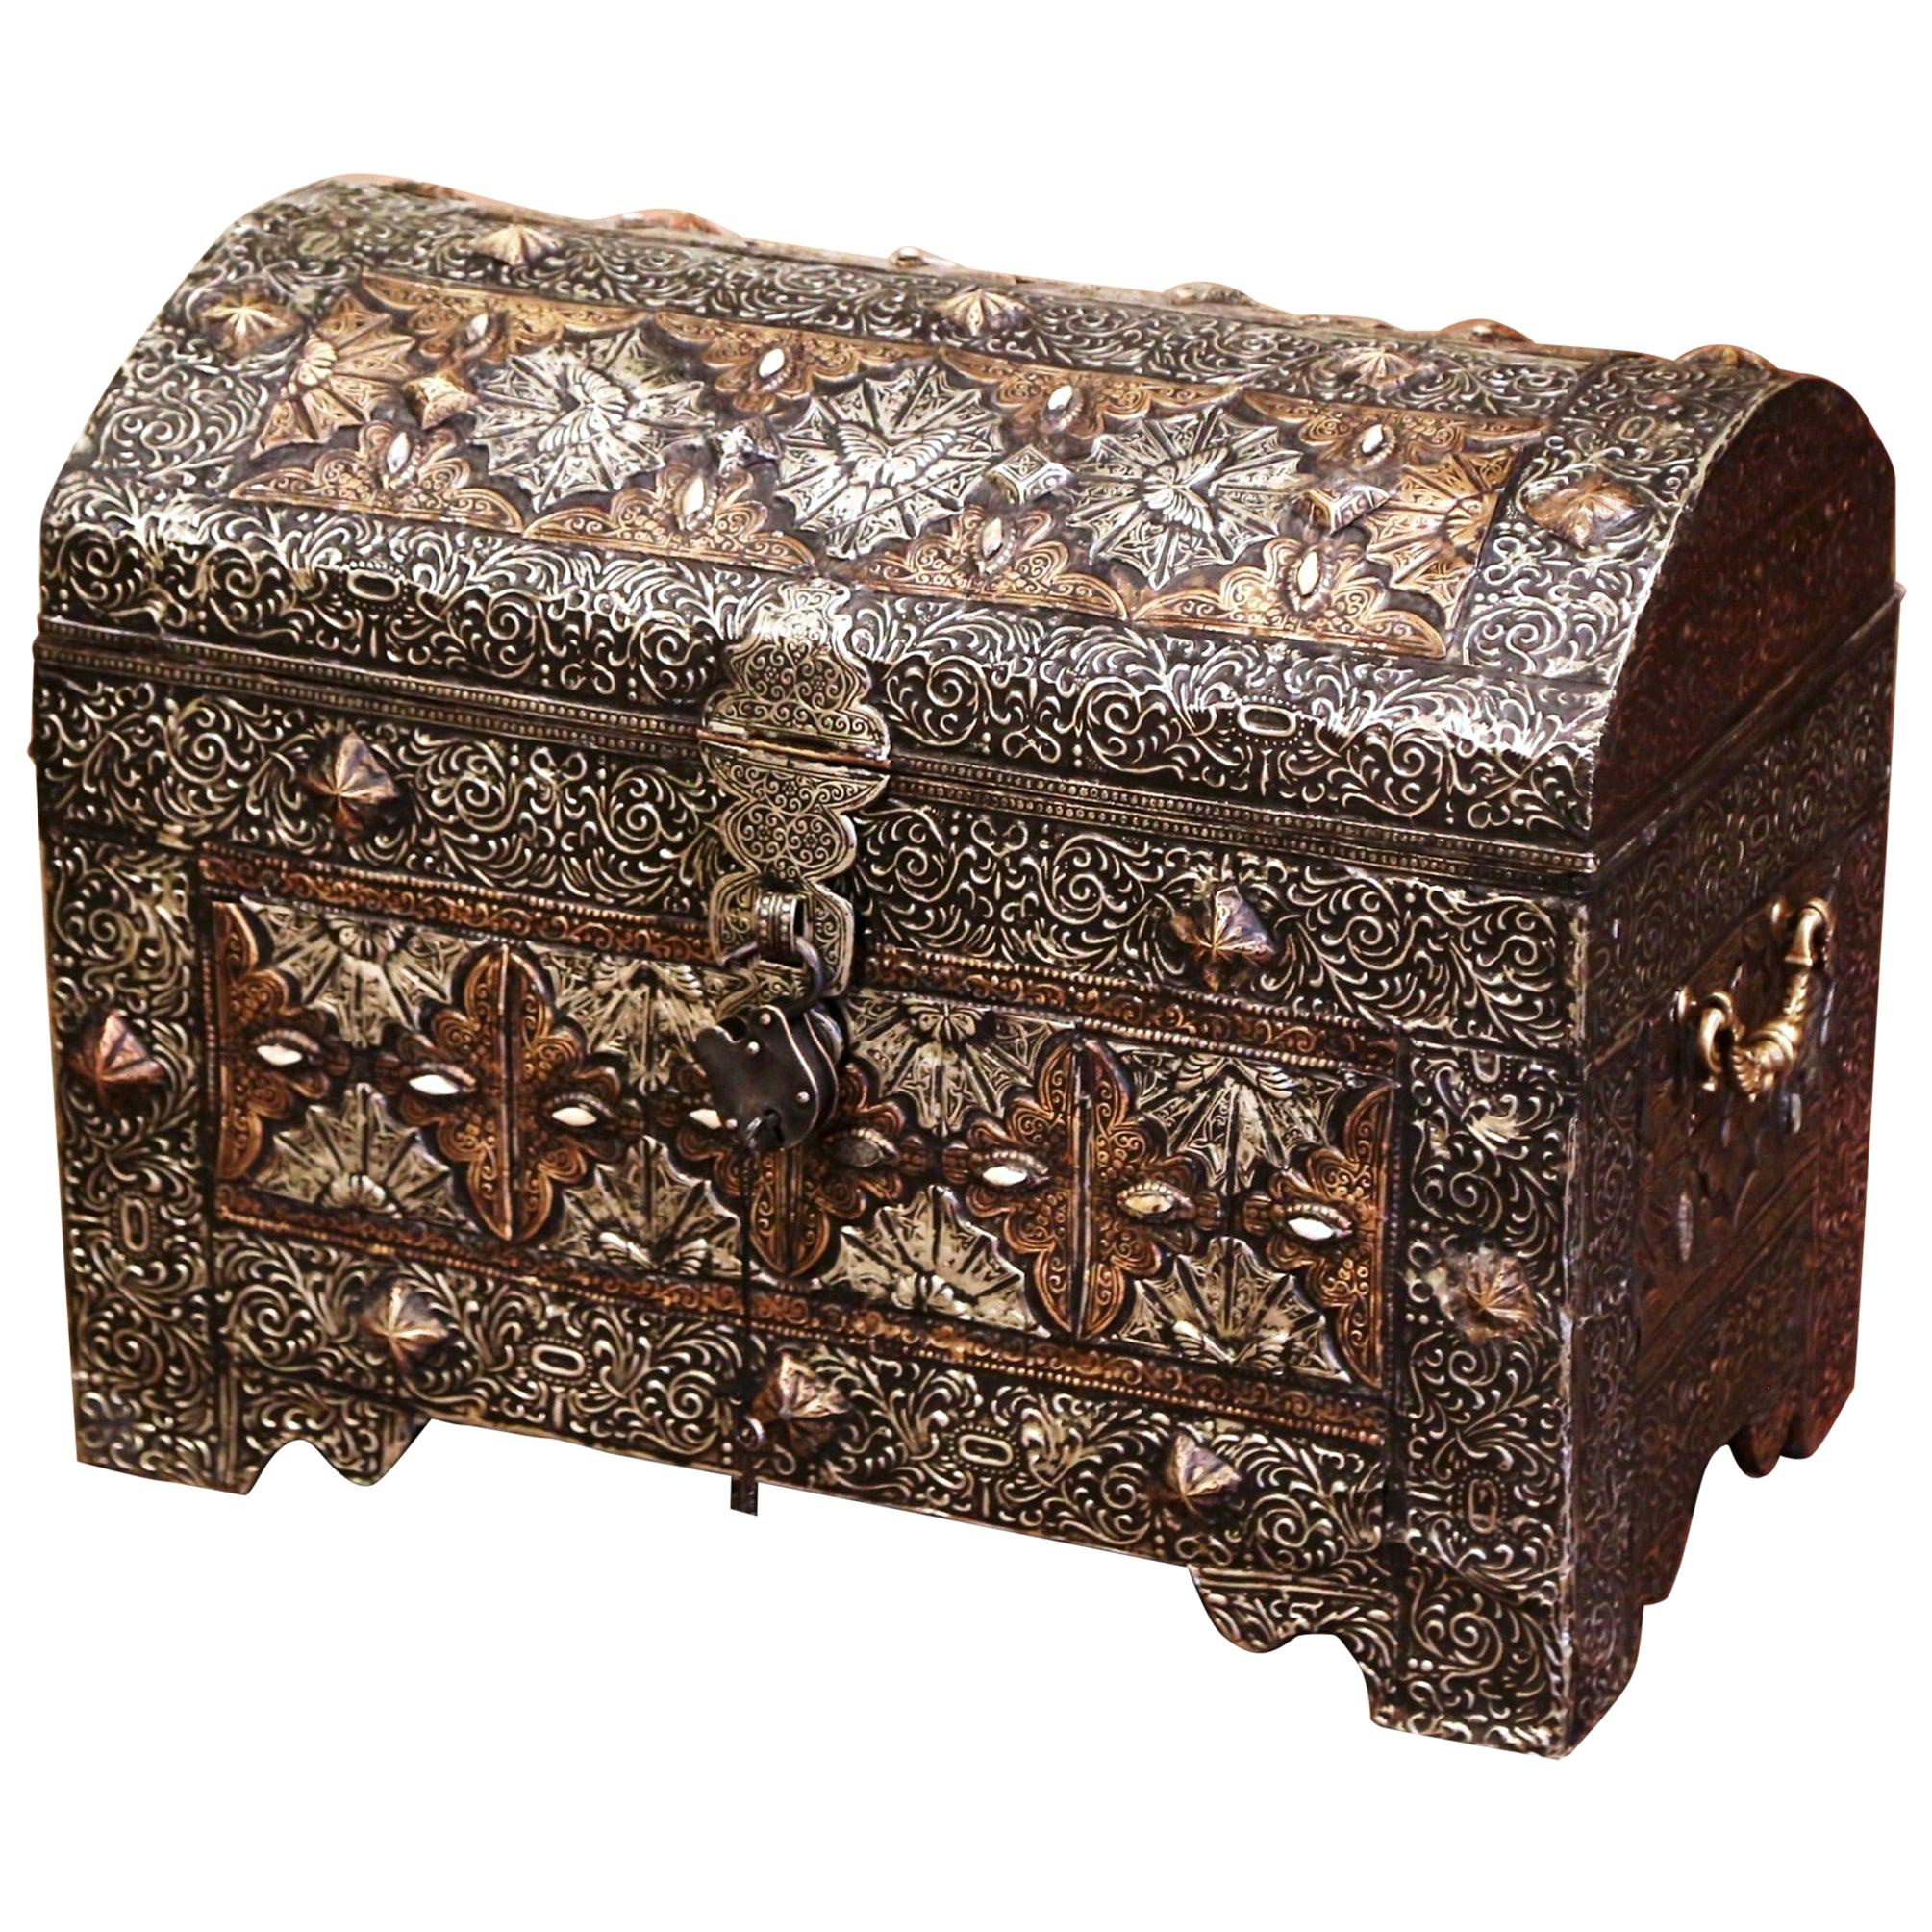 Coffre à trésors gothique marocain du 19ème siècle en argent repoussé et cuivre doré